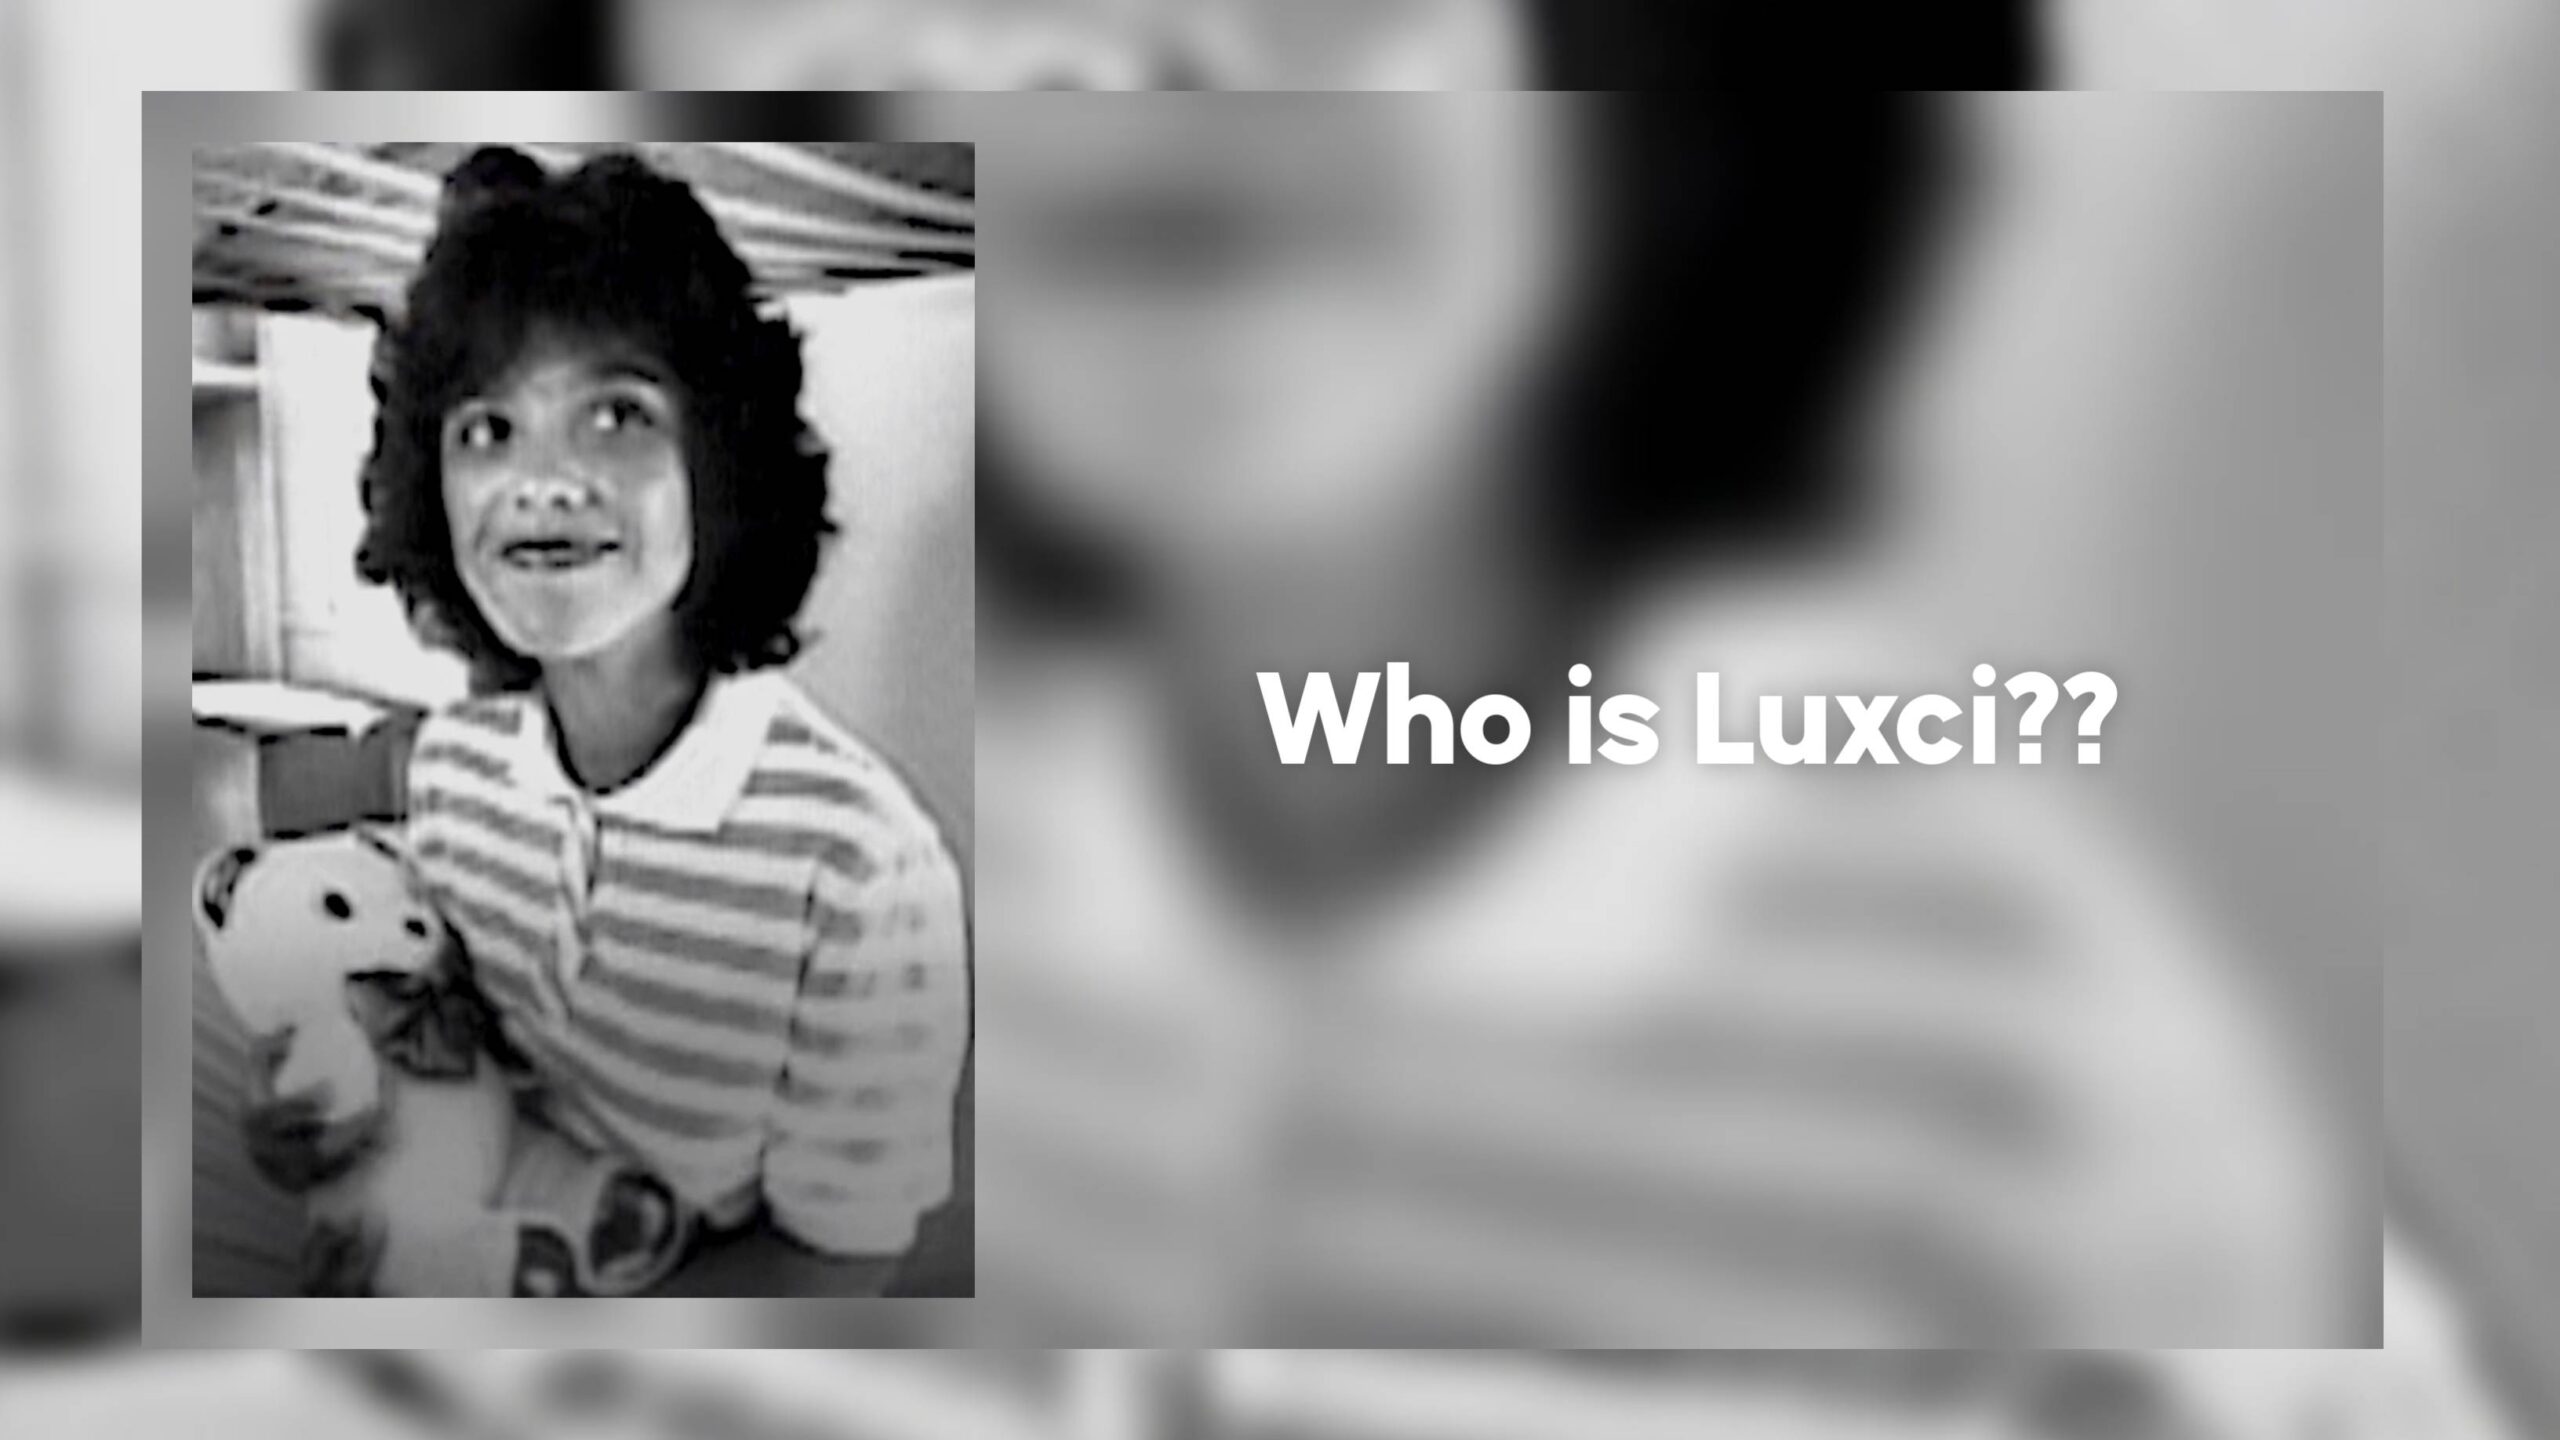 노숙자 청각 장애인 Luxci는 누구입니까? 1